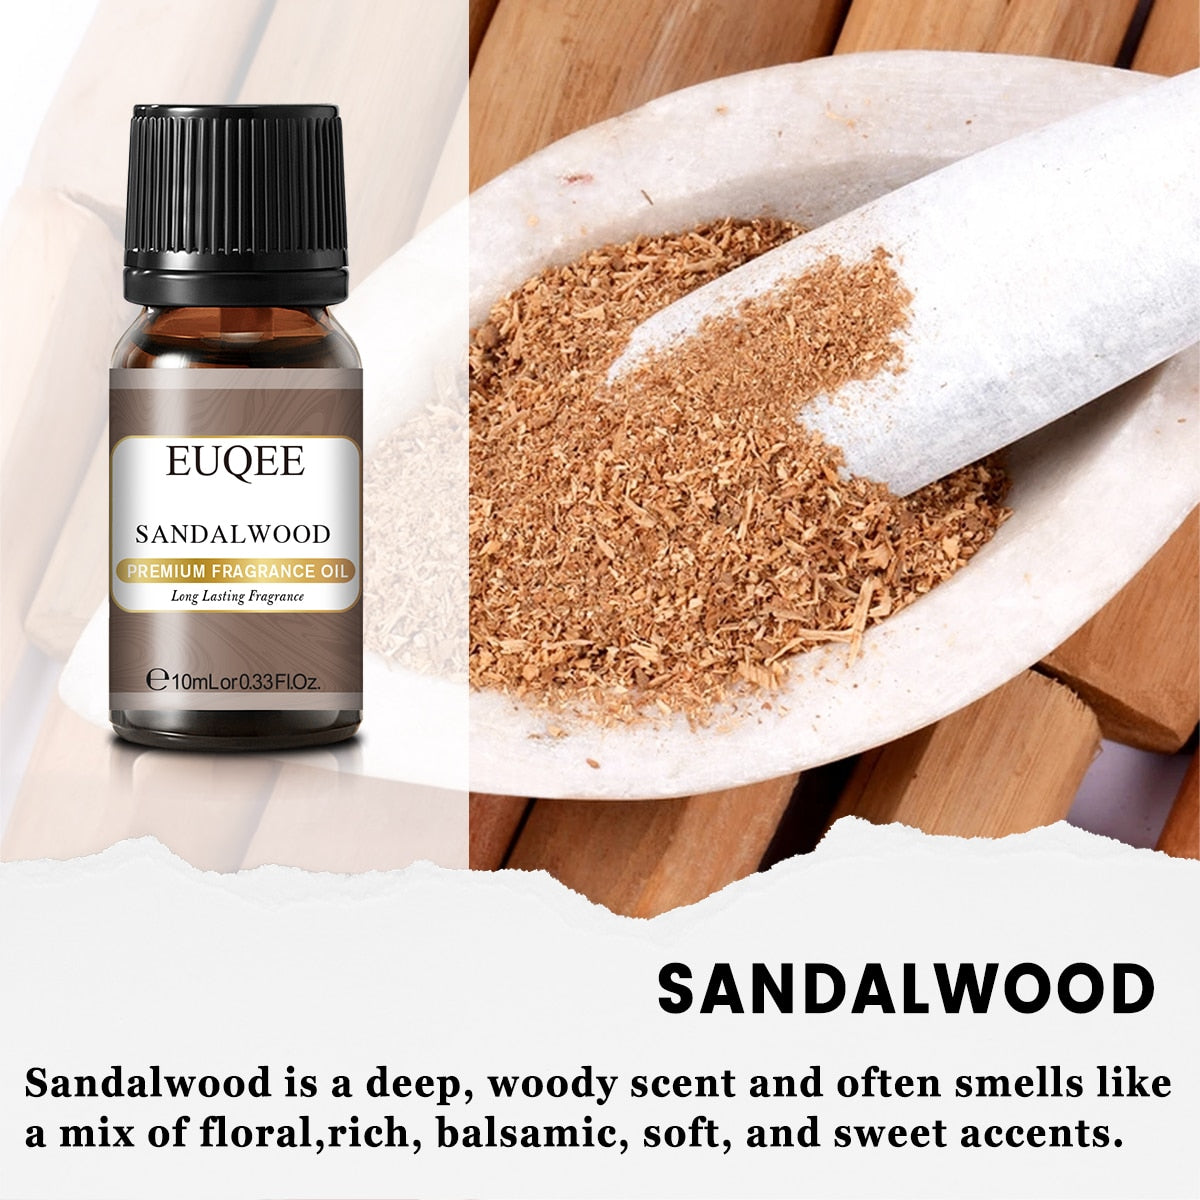 Aromar Fragrance Oil Sandalwood Forest